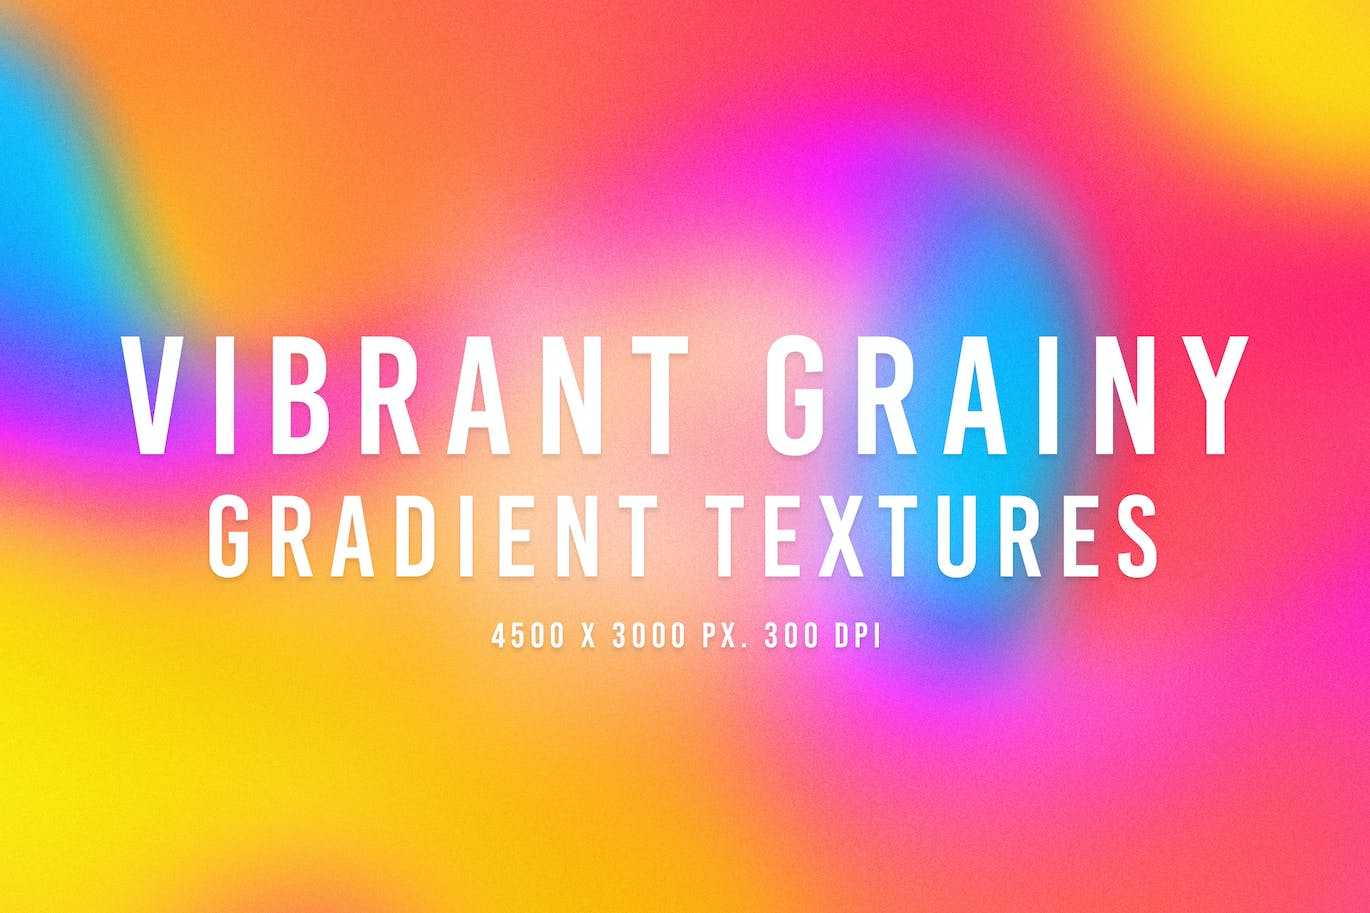 充满活力的颗粒渐变纹理 Vibrant Grainy Gradient Textures 图片素材 第1张